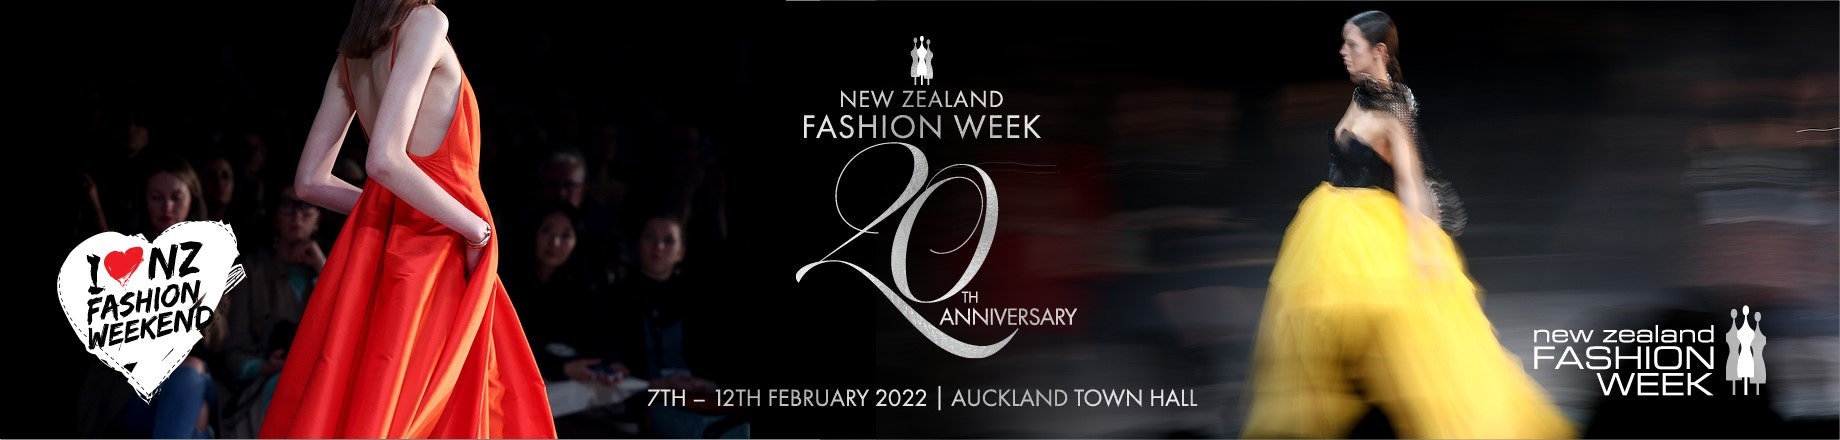 NZ Fashion Week